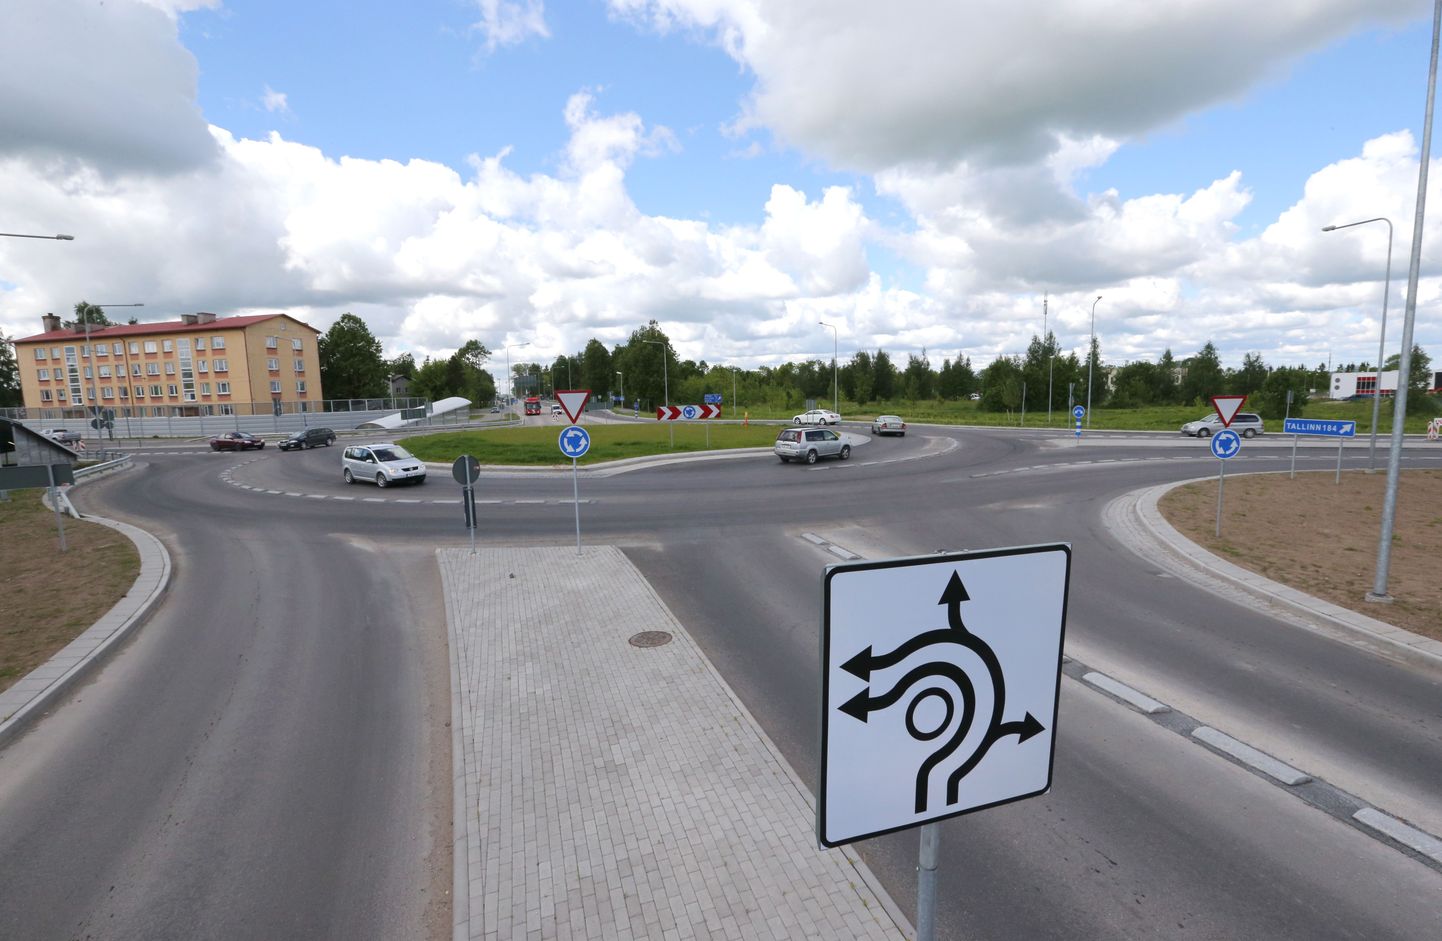 Enne Viljandi ringile sõitmist tuleb hoolega vaadata liiklusmärke, sest ringil enam sõidurada vahetada ei saa.